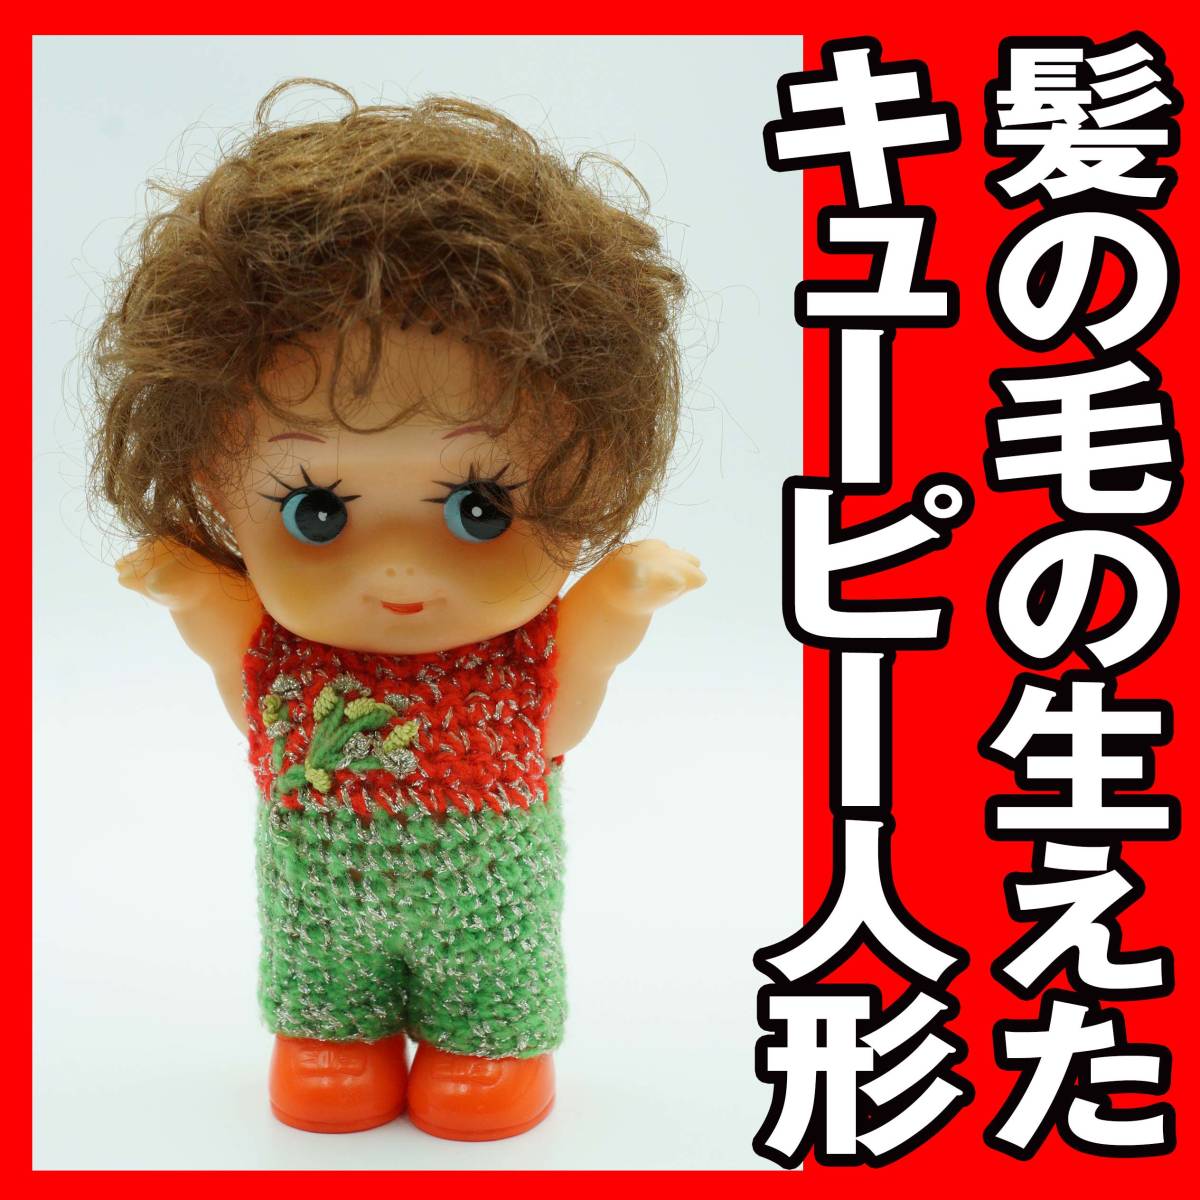 ヤフオク! - 昭和のレトロ 髪の毛の生えたキューピー人形